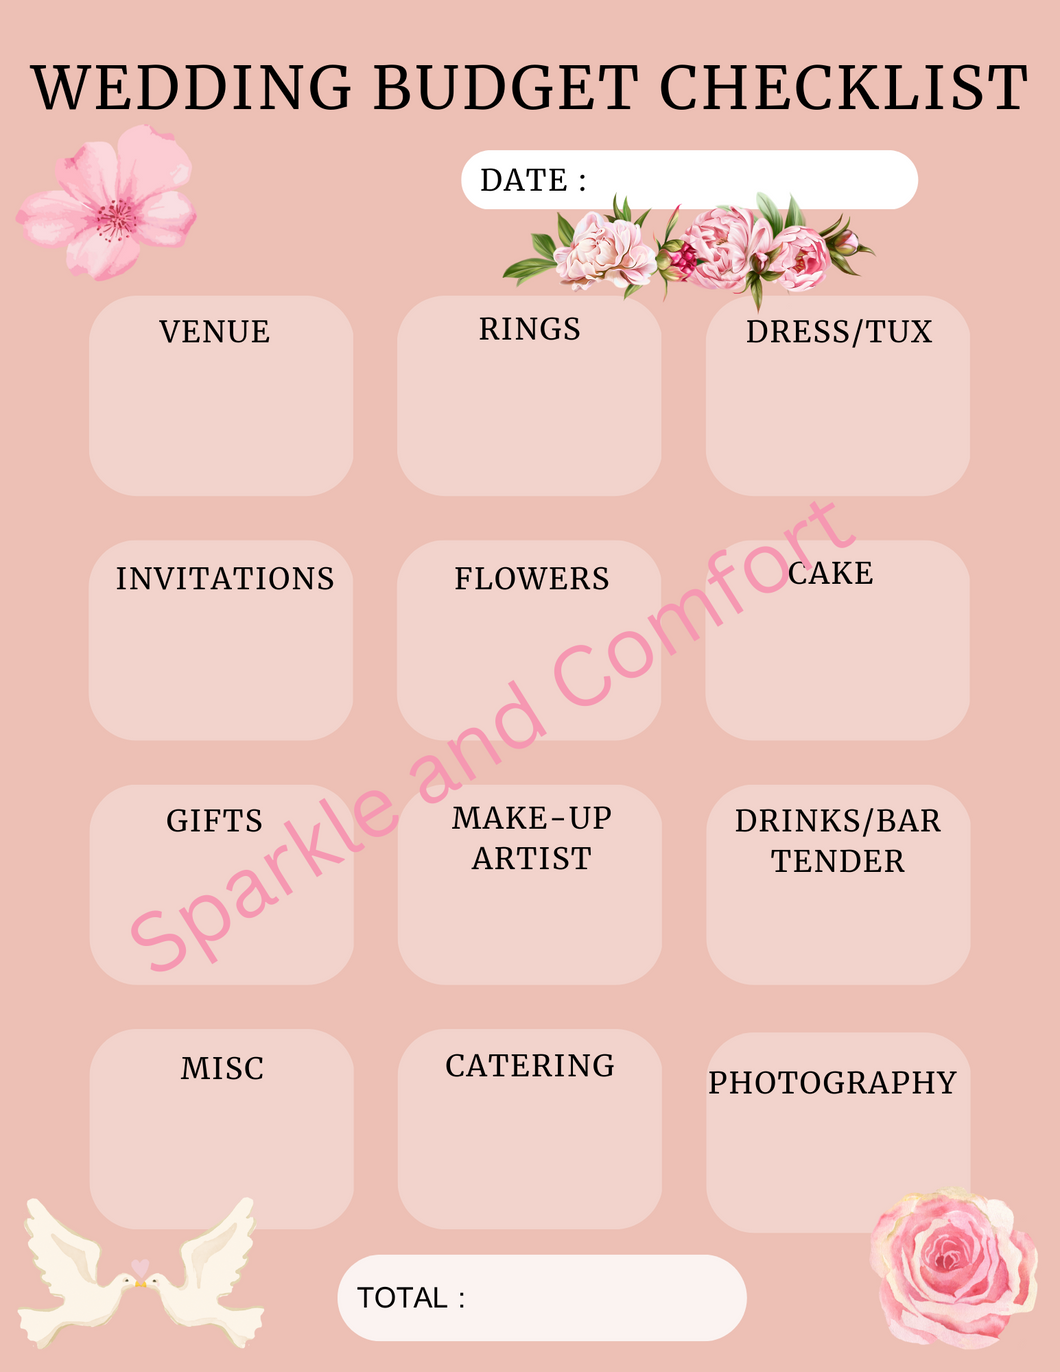 Digital Planner - Wedding Budget Checklist - Pink Flowers